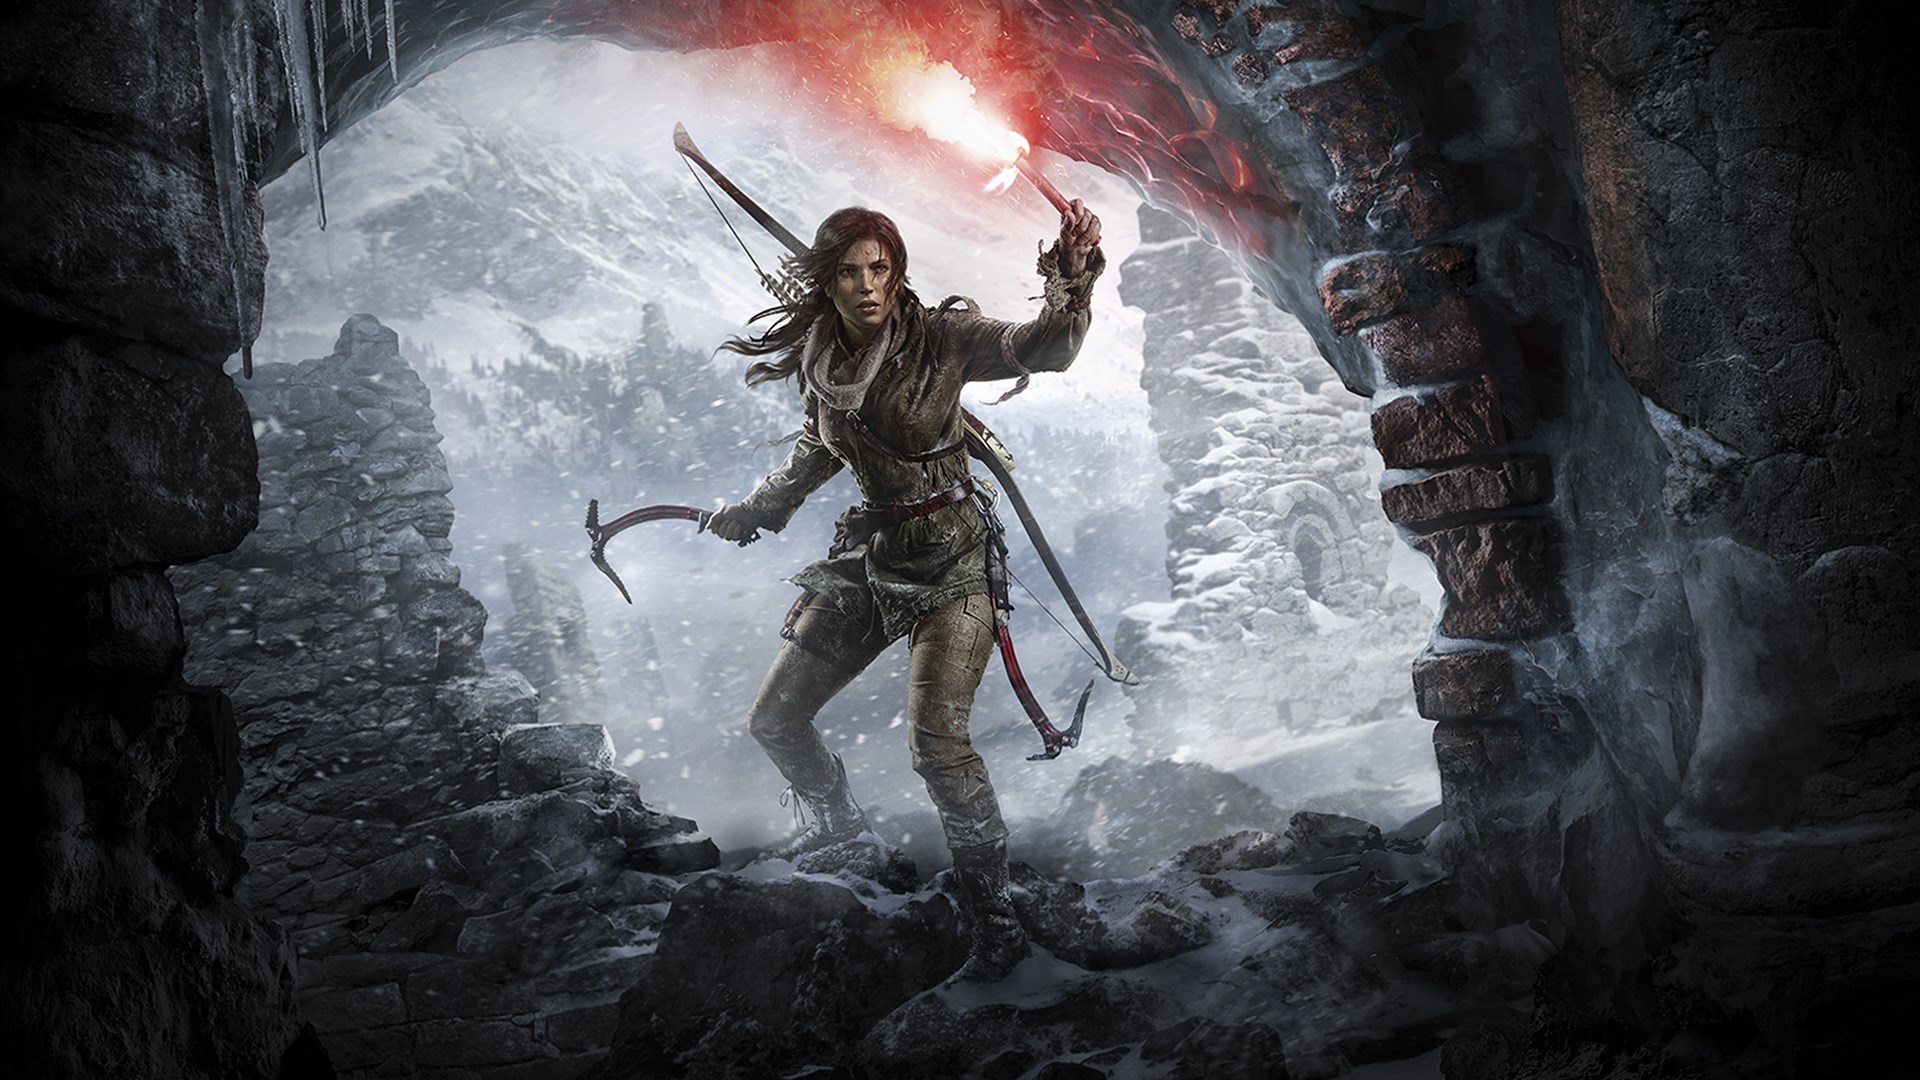 خرید بازی Rise of the Tomb Raider - قیام مهاجم مقبره ایکس باکس xbox با قیمت مناسب همراه نقد و بررسی